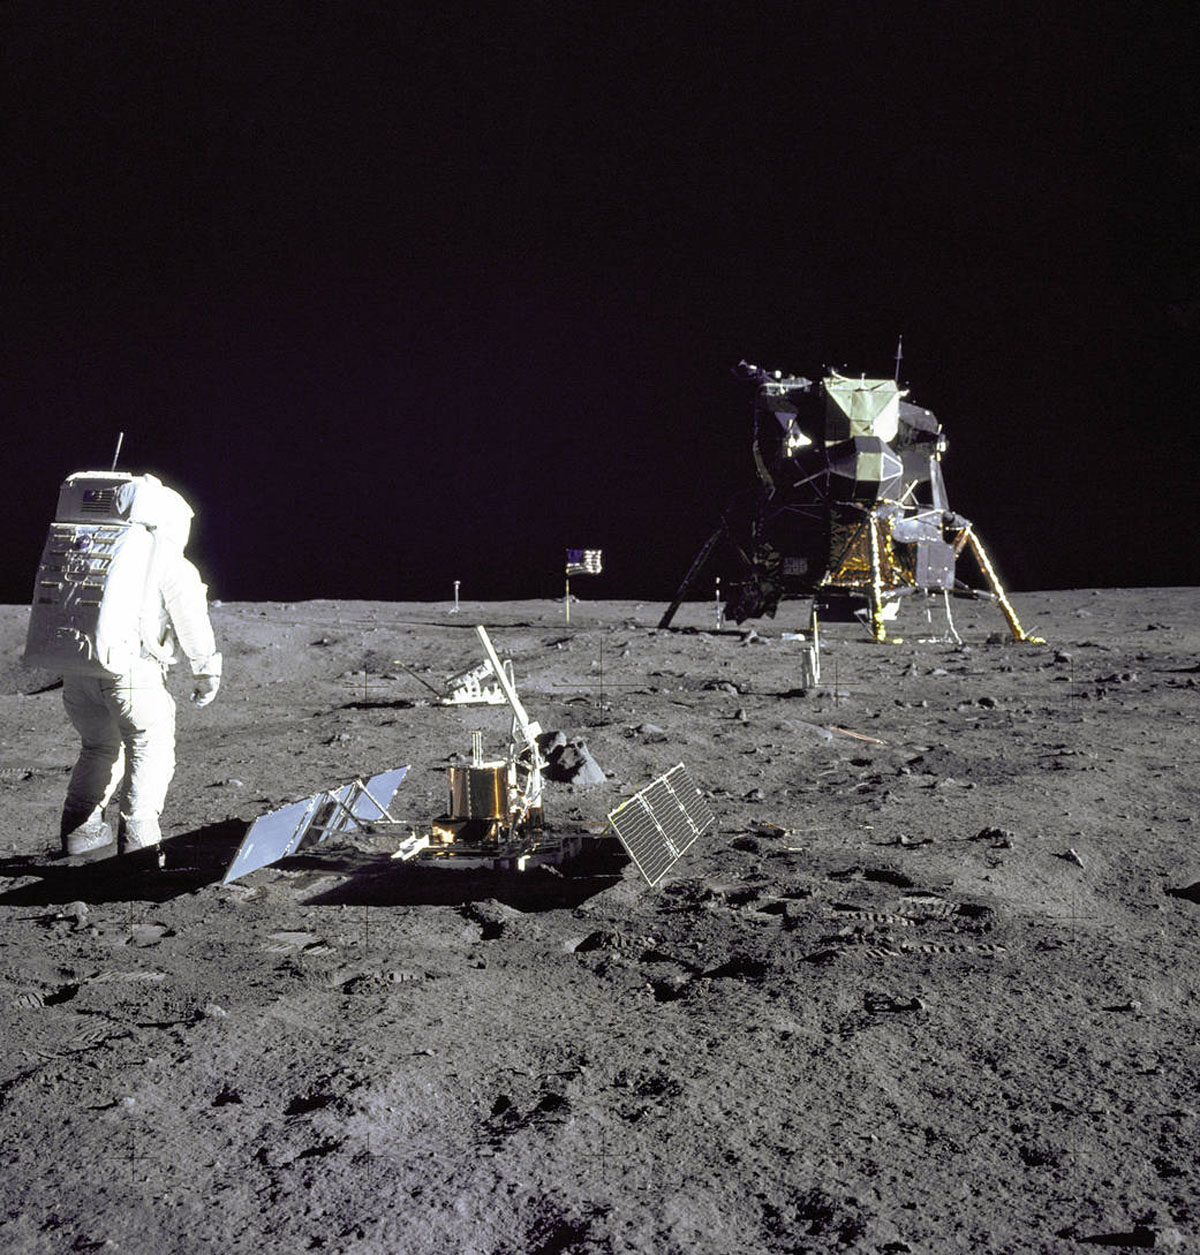 Σαν Σήμερα: Ο άνθρωπος για πρώτη φορά στη Σελήνη